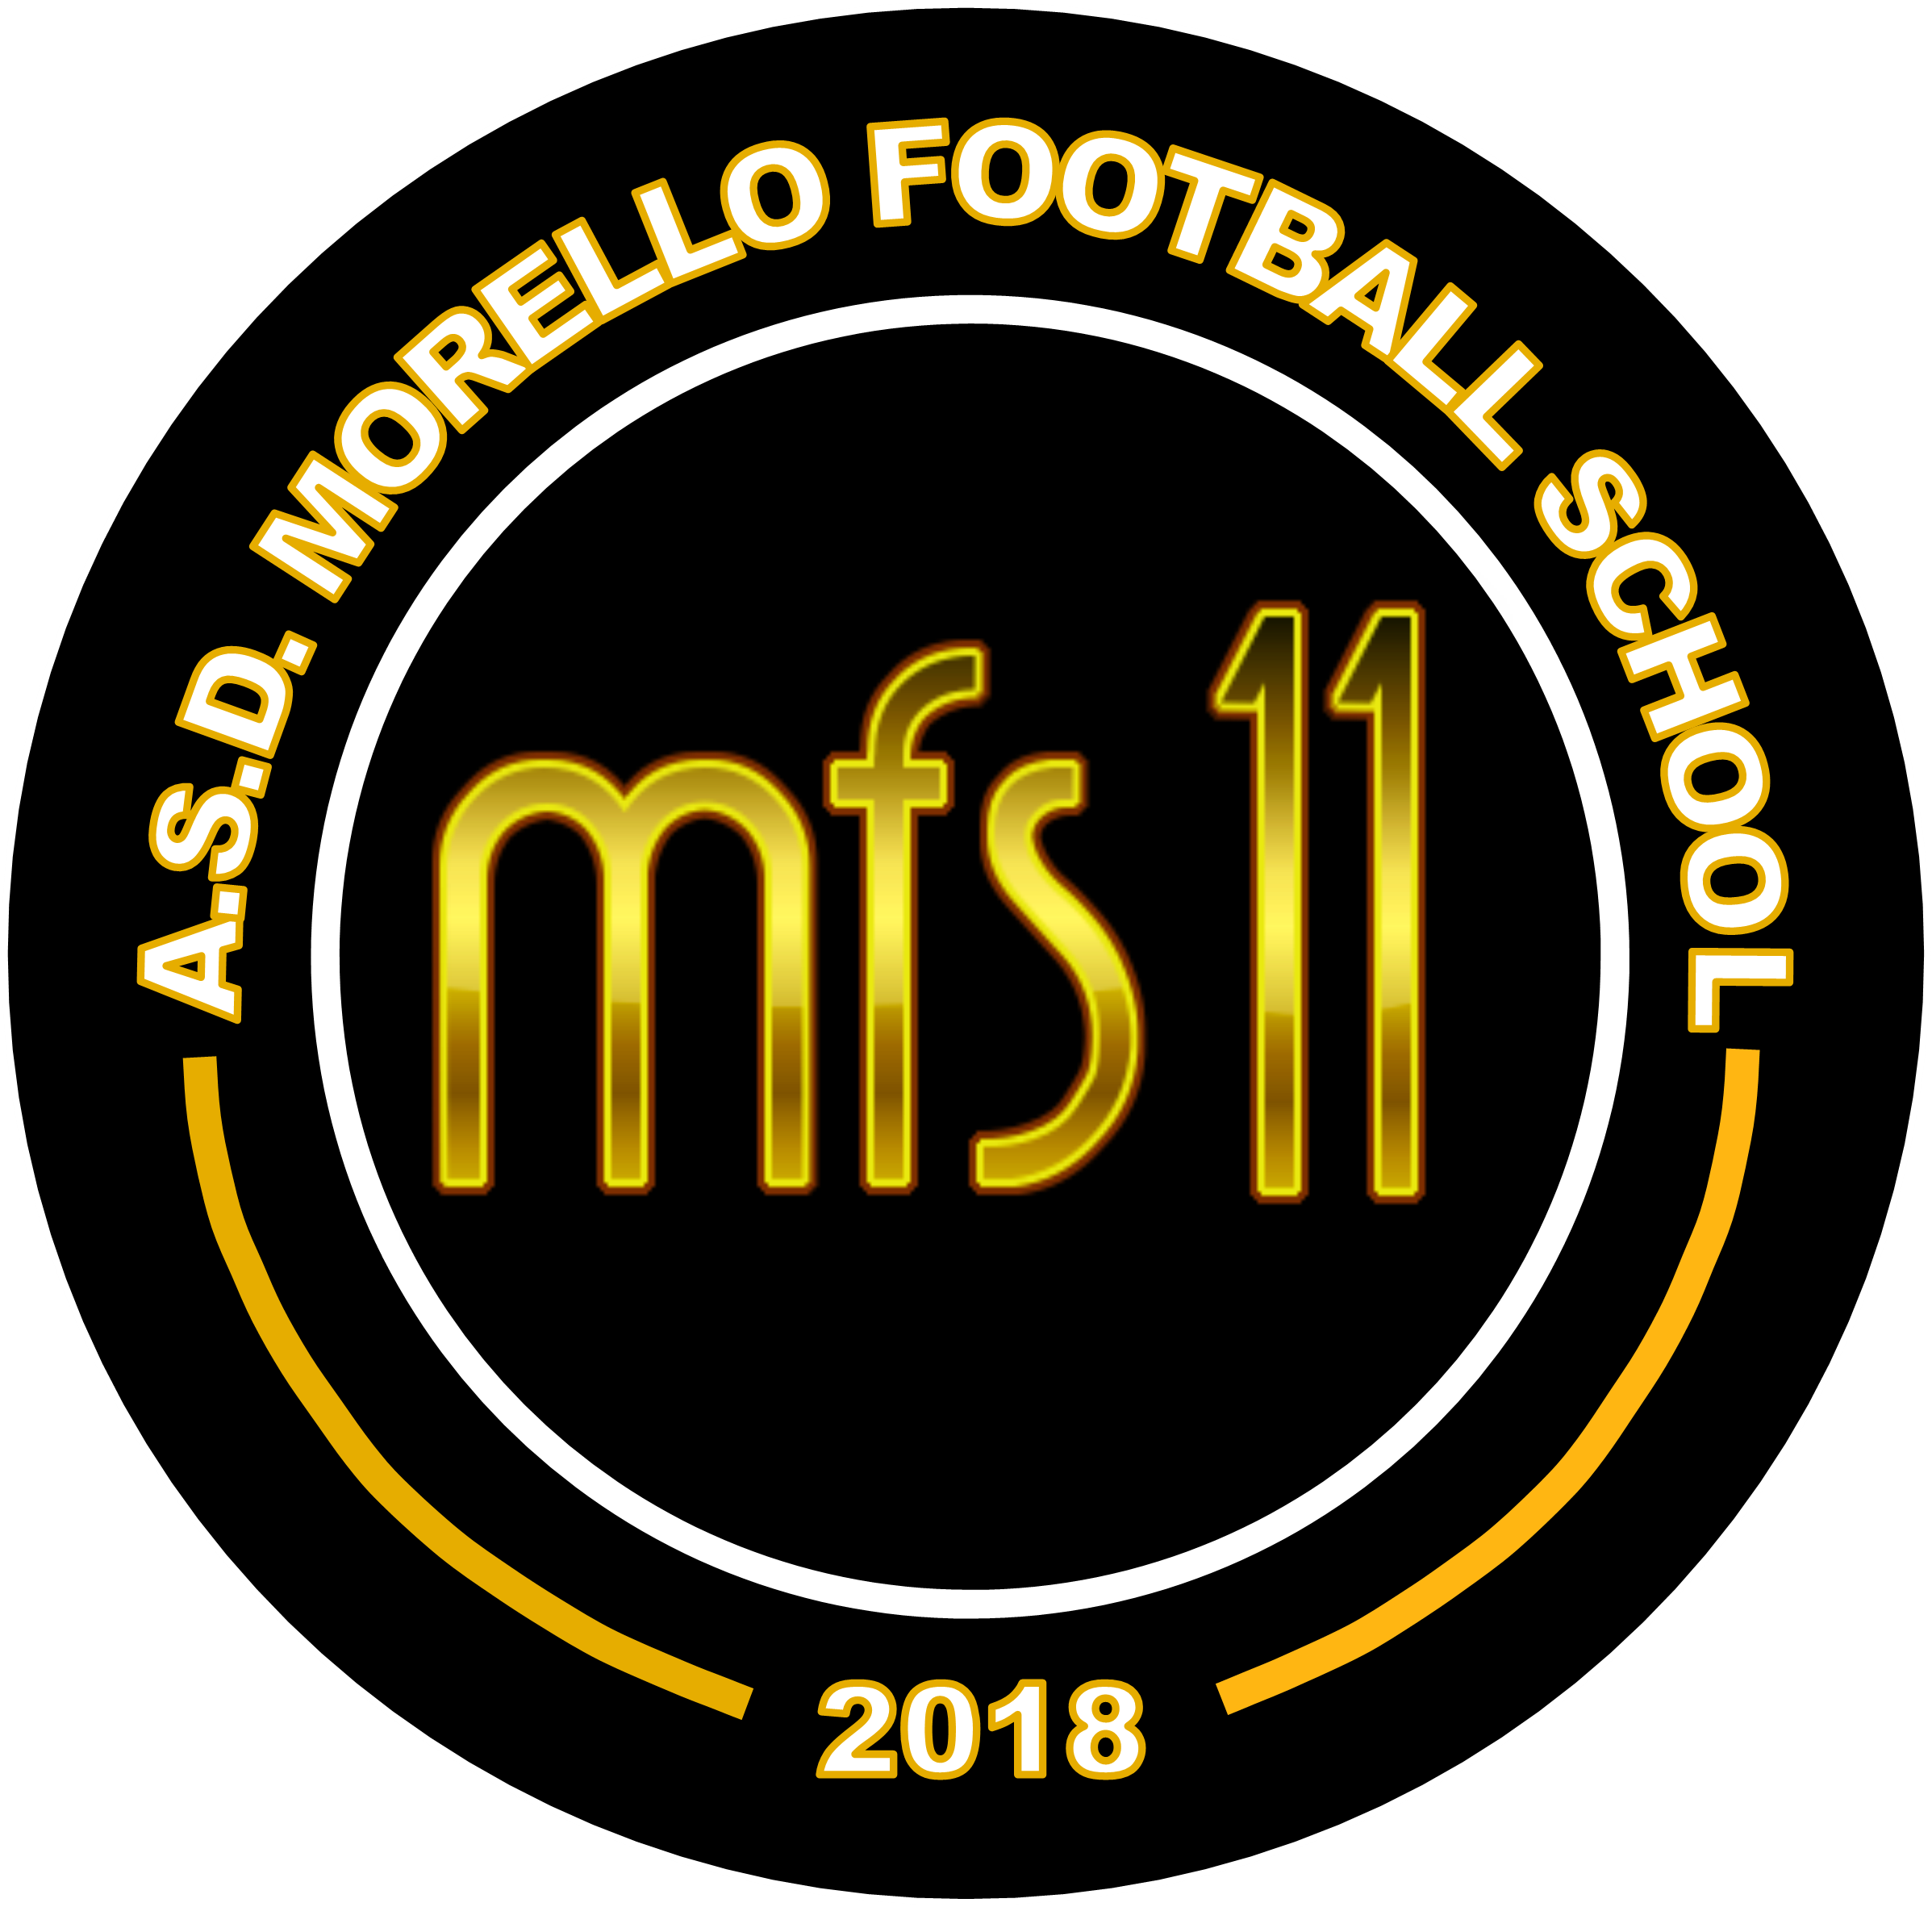 A.S.D. MORELLO FOOTBALL SCHOOL